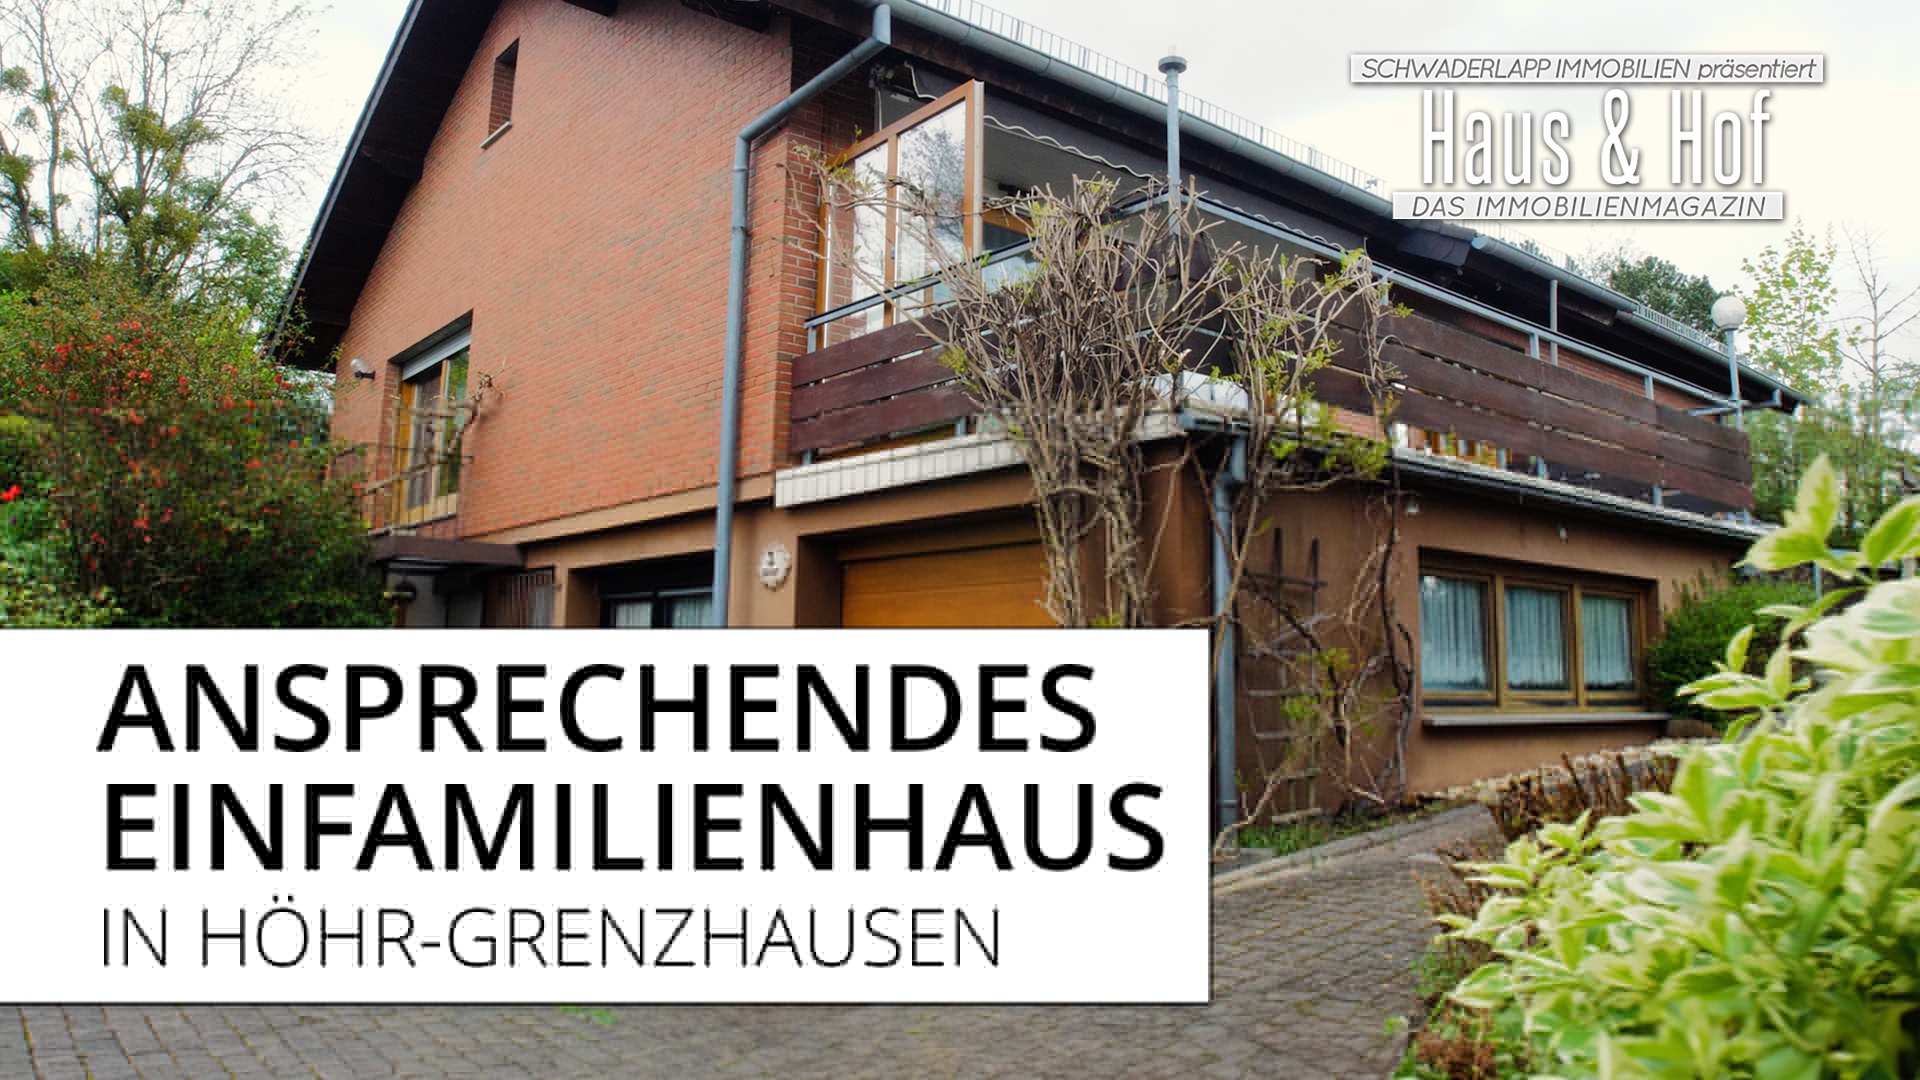 Ansprechendes Einfamilienhaus in Höhr-Grenzhausen